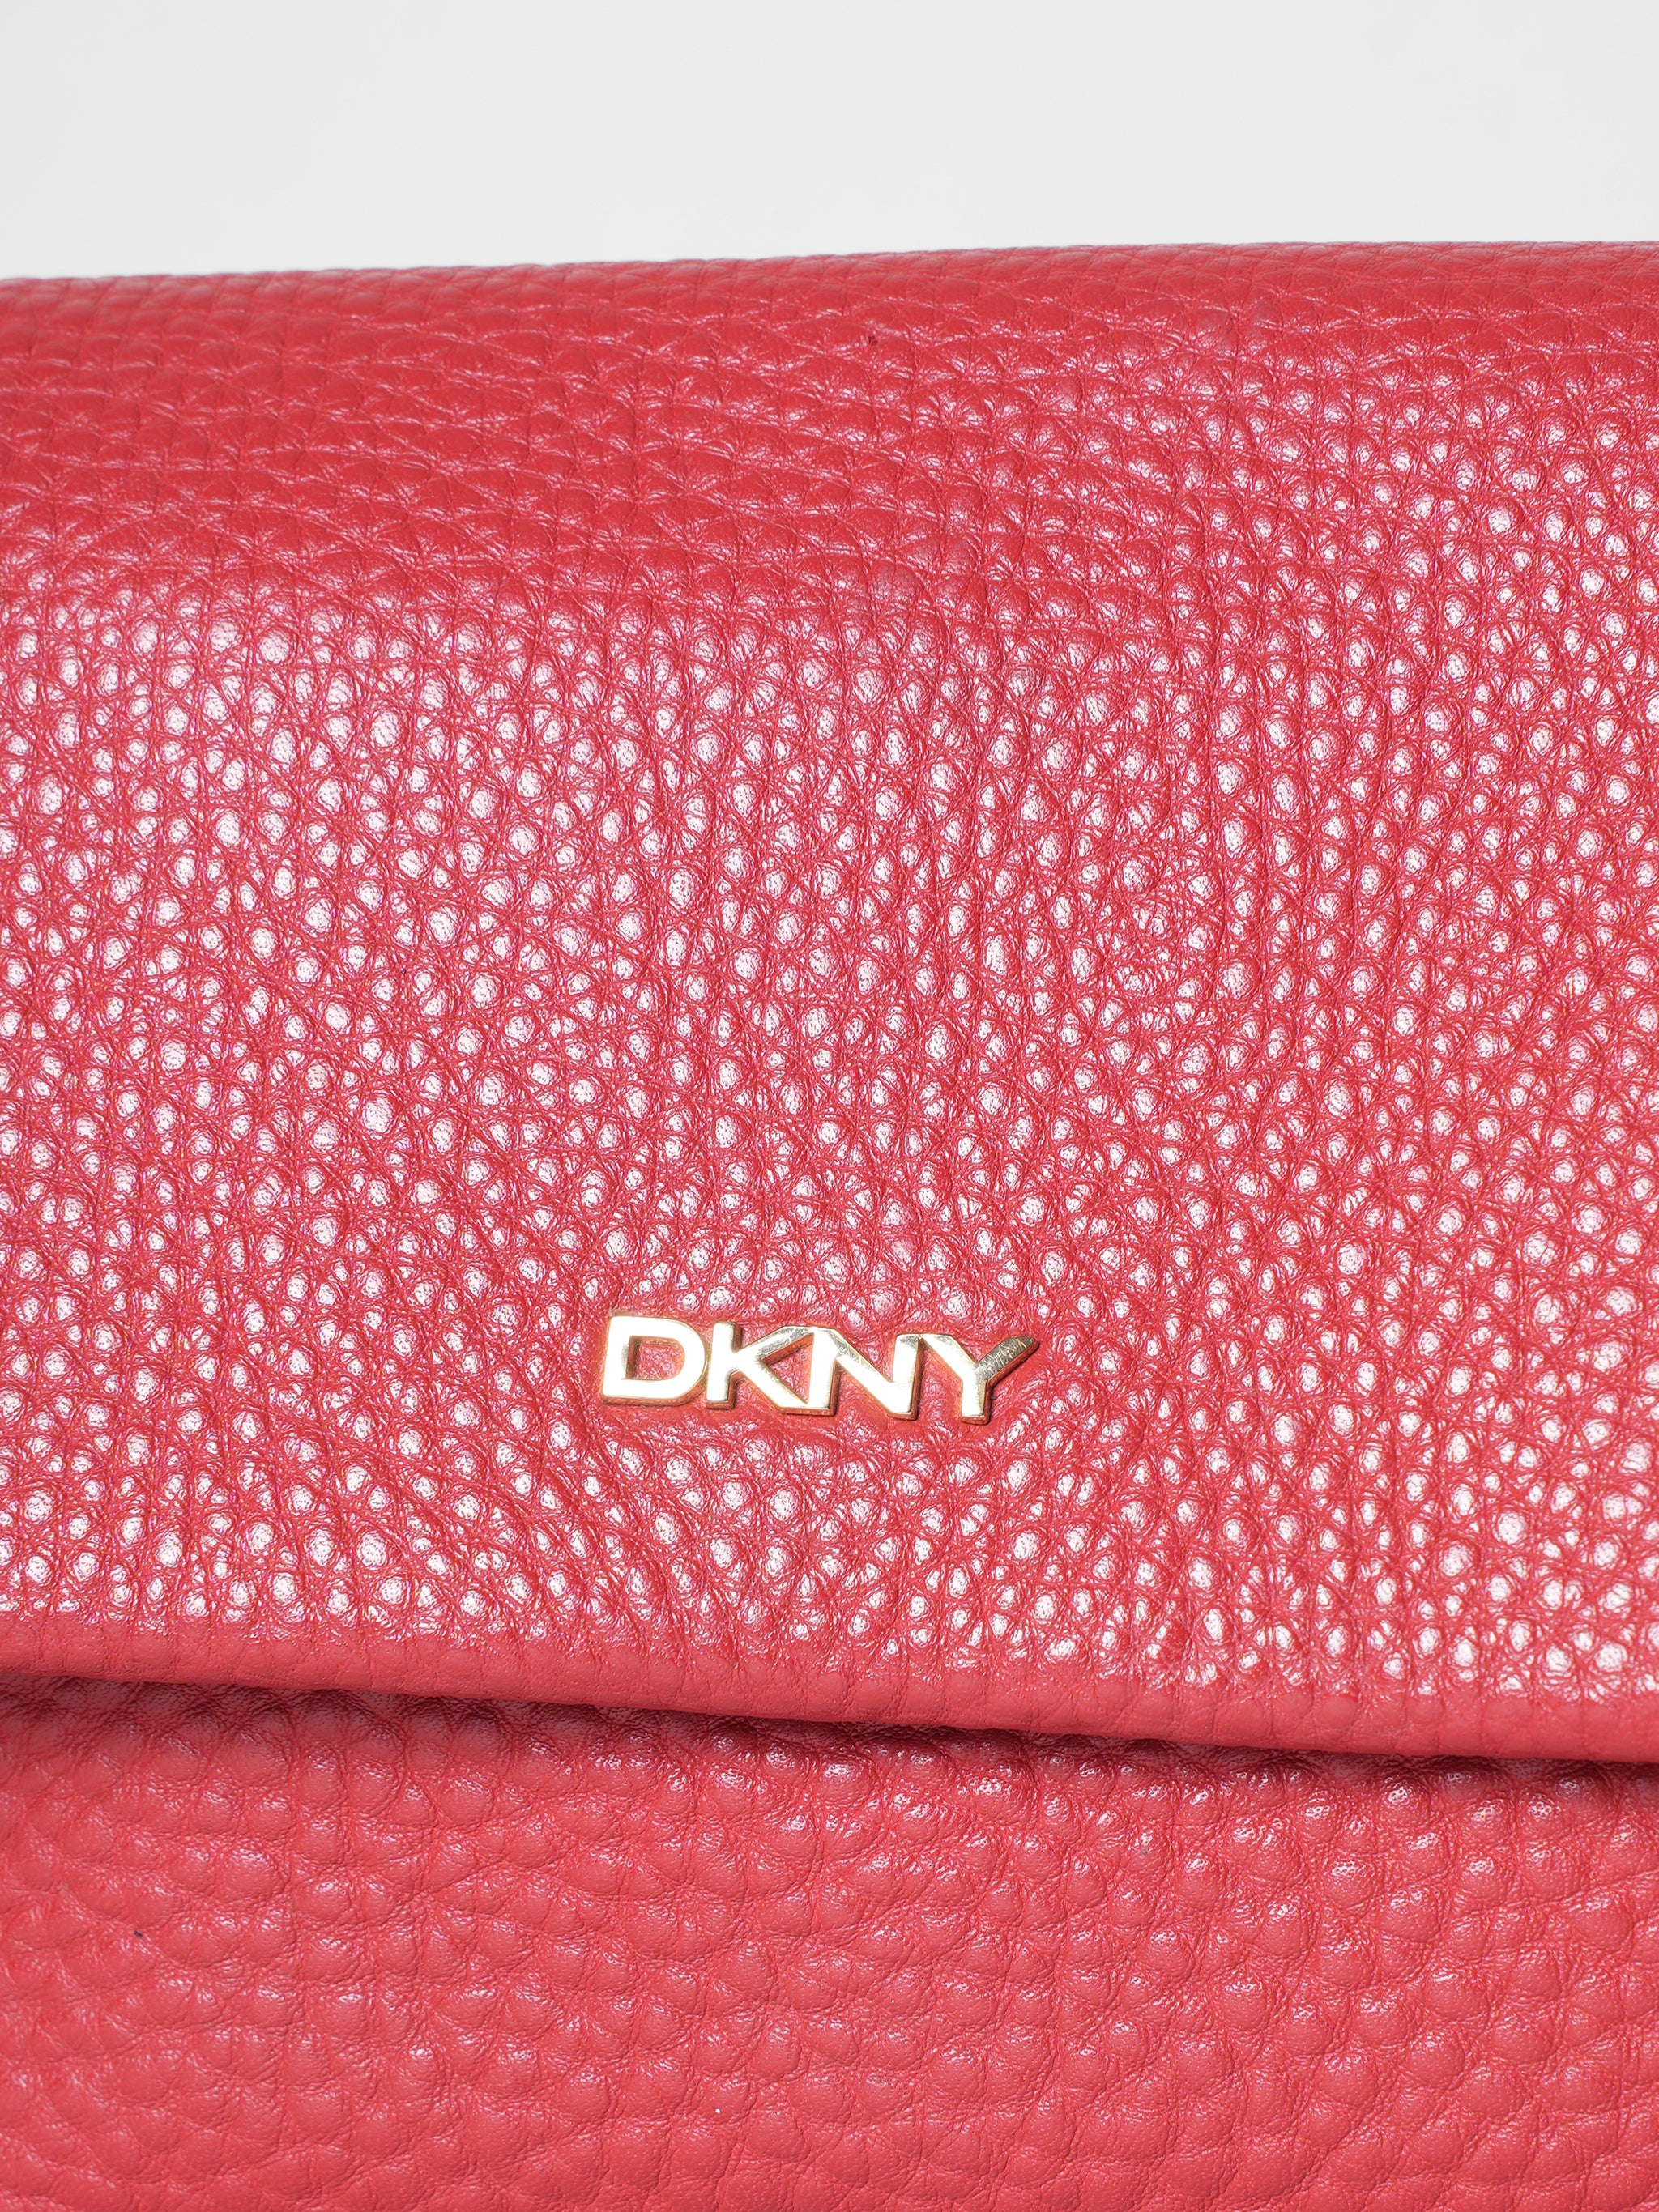 DKNY Small Elissa Bag - Farfetch